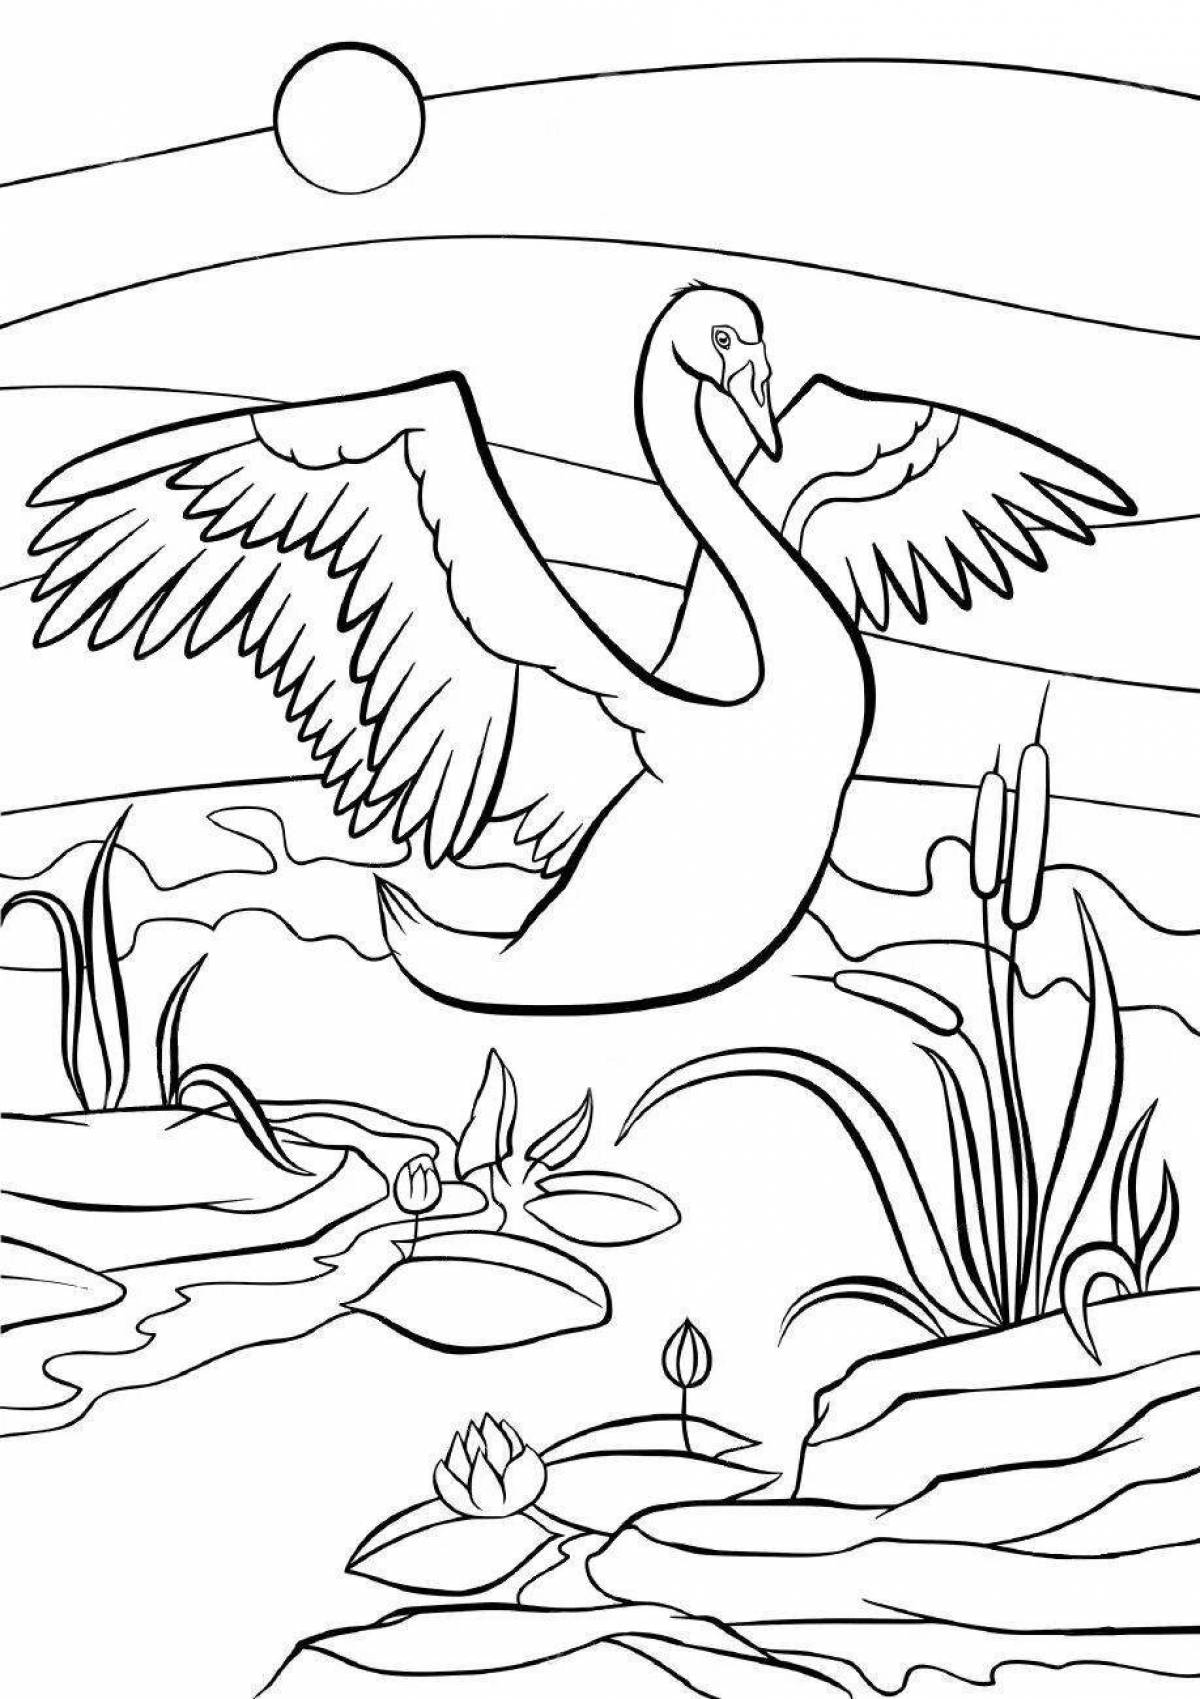 Fun coloring swan lake for preschoolers